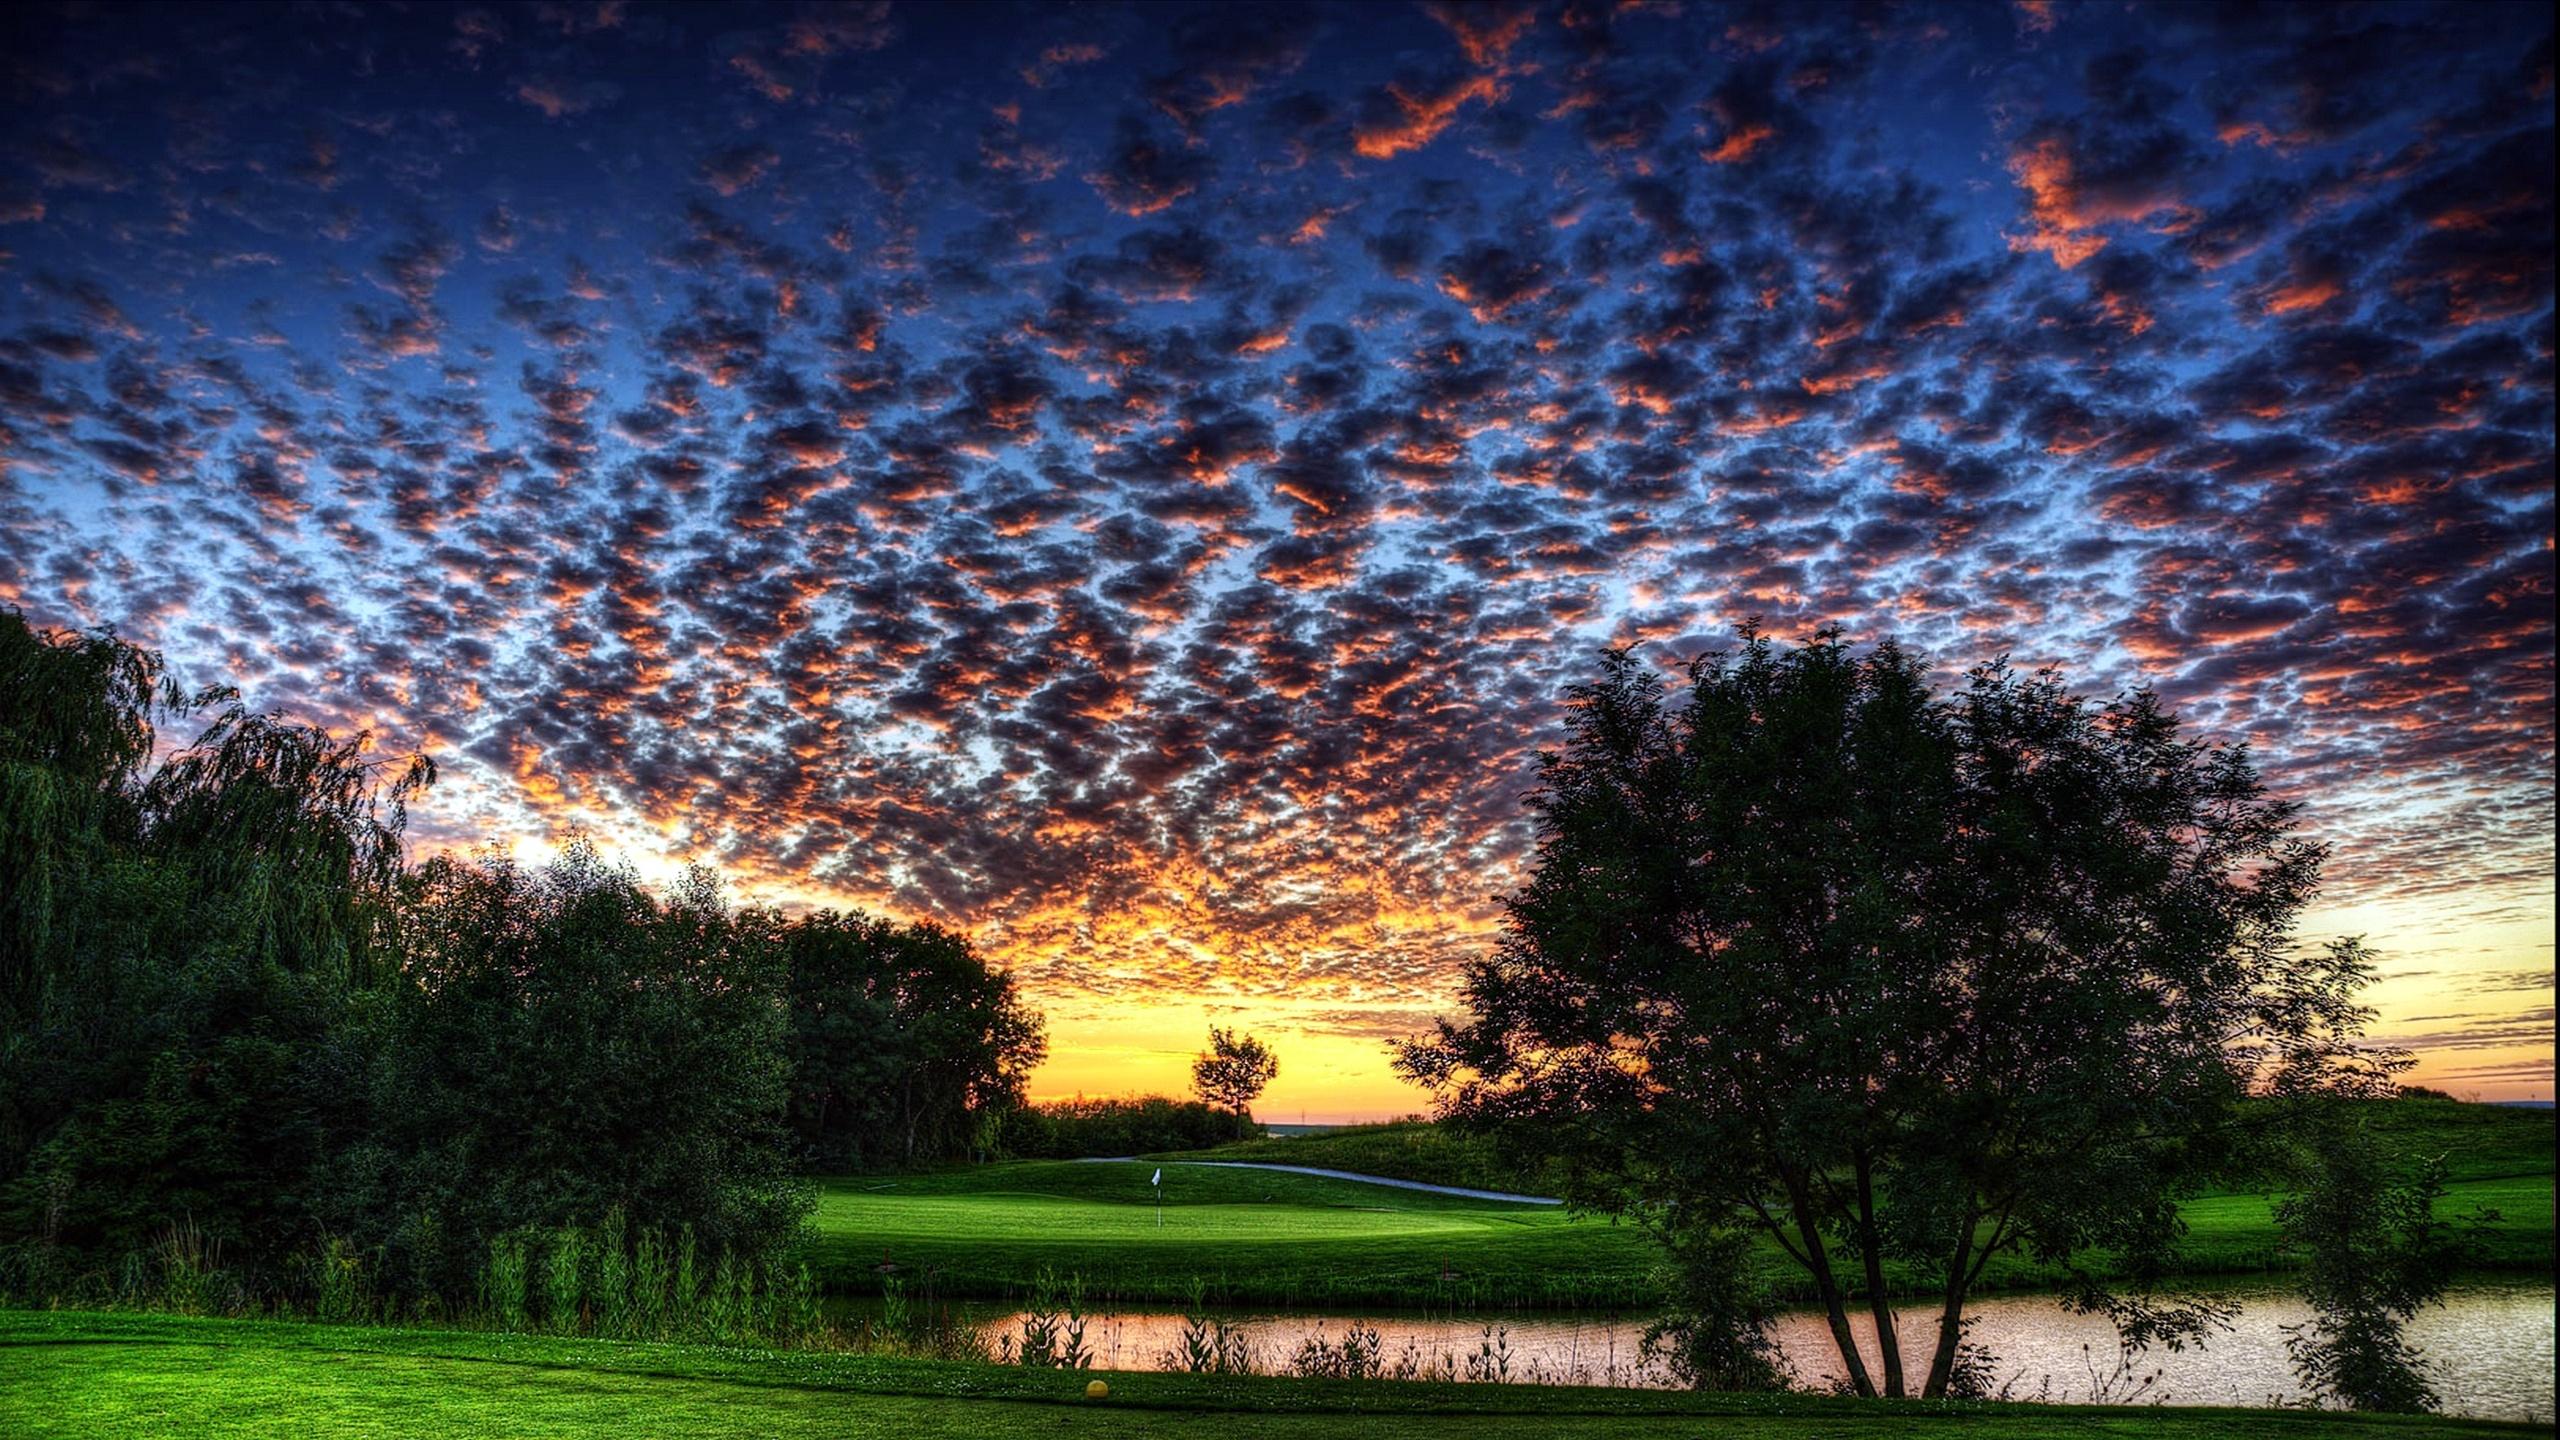 Best Images About Golfdiscount the Augusta National - Golf Desktop Wallpaper  Hd - 2560x1440 Wallpaper 